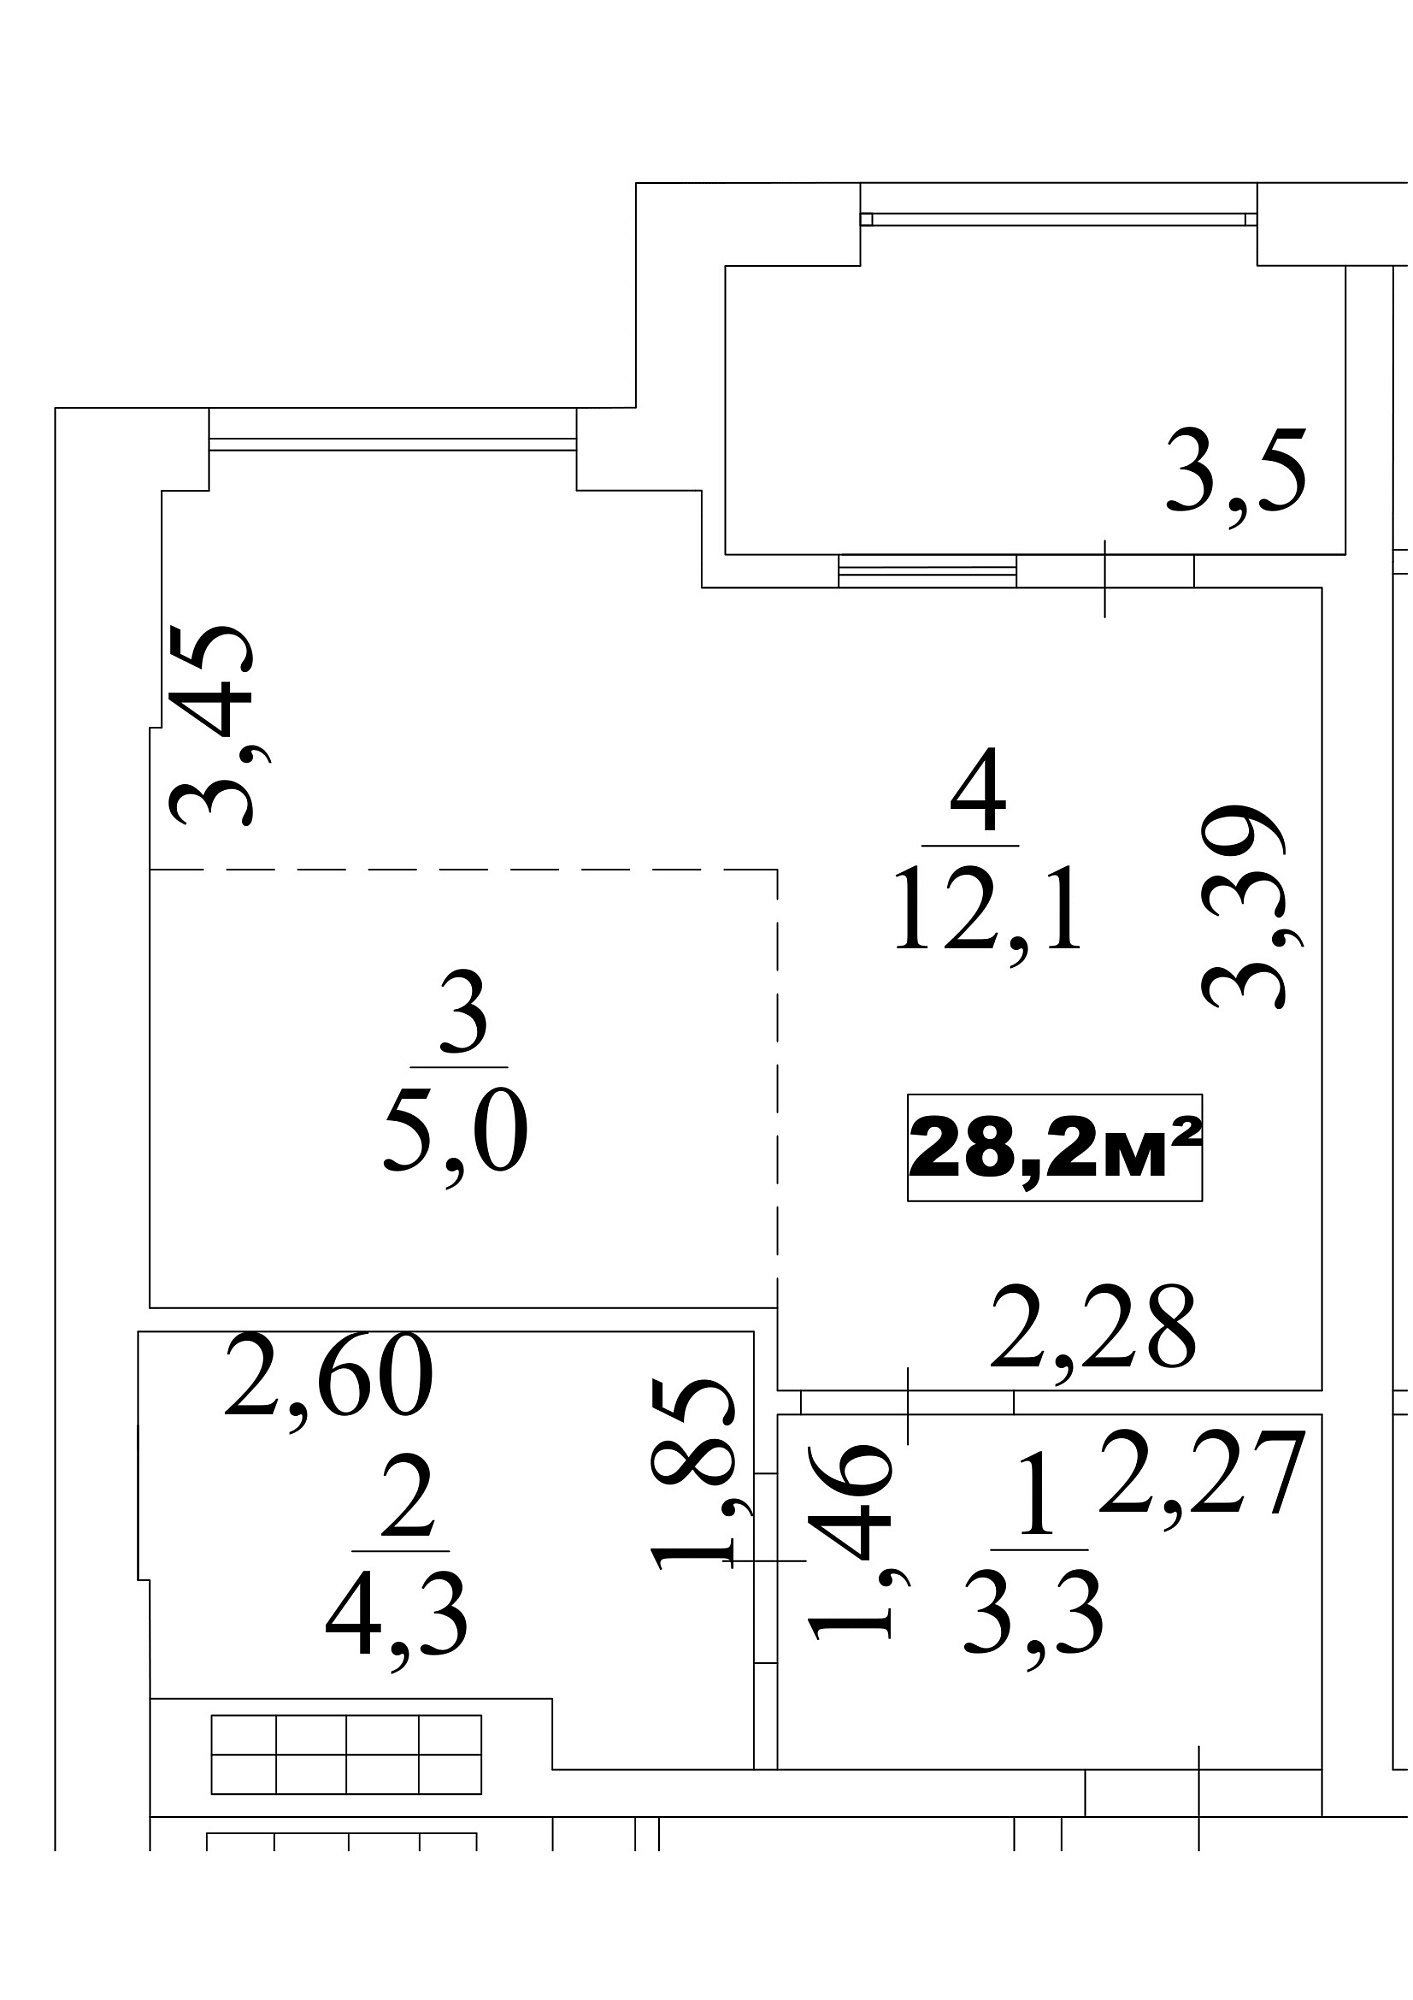 Планування Smart-квартира площею 28.2м2, AB-10-09/0075б.